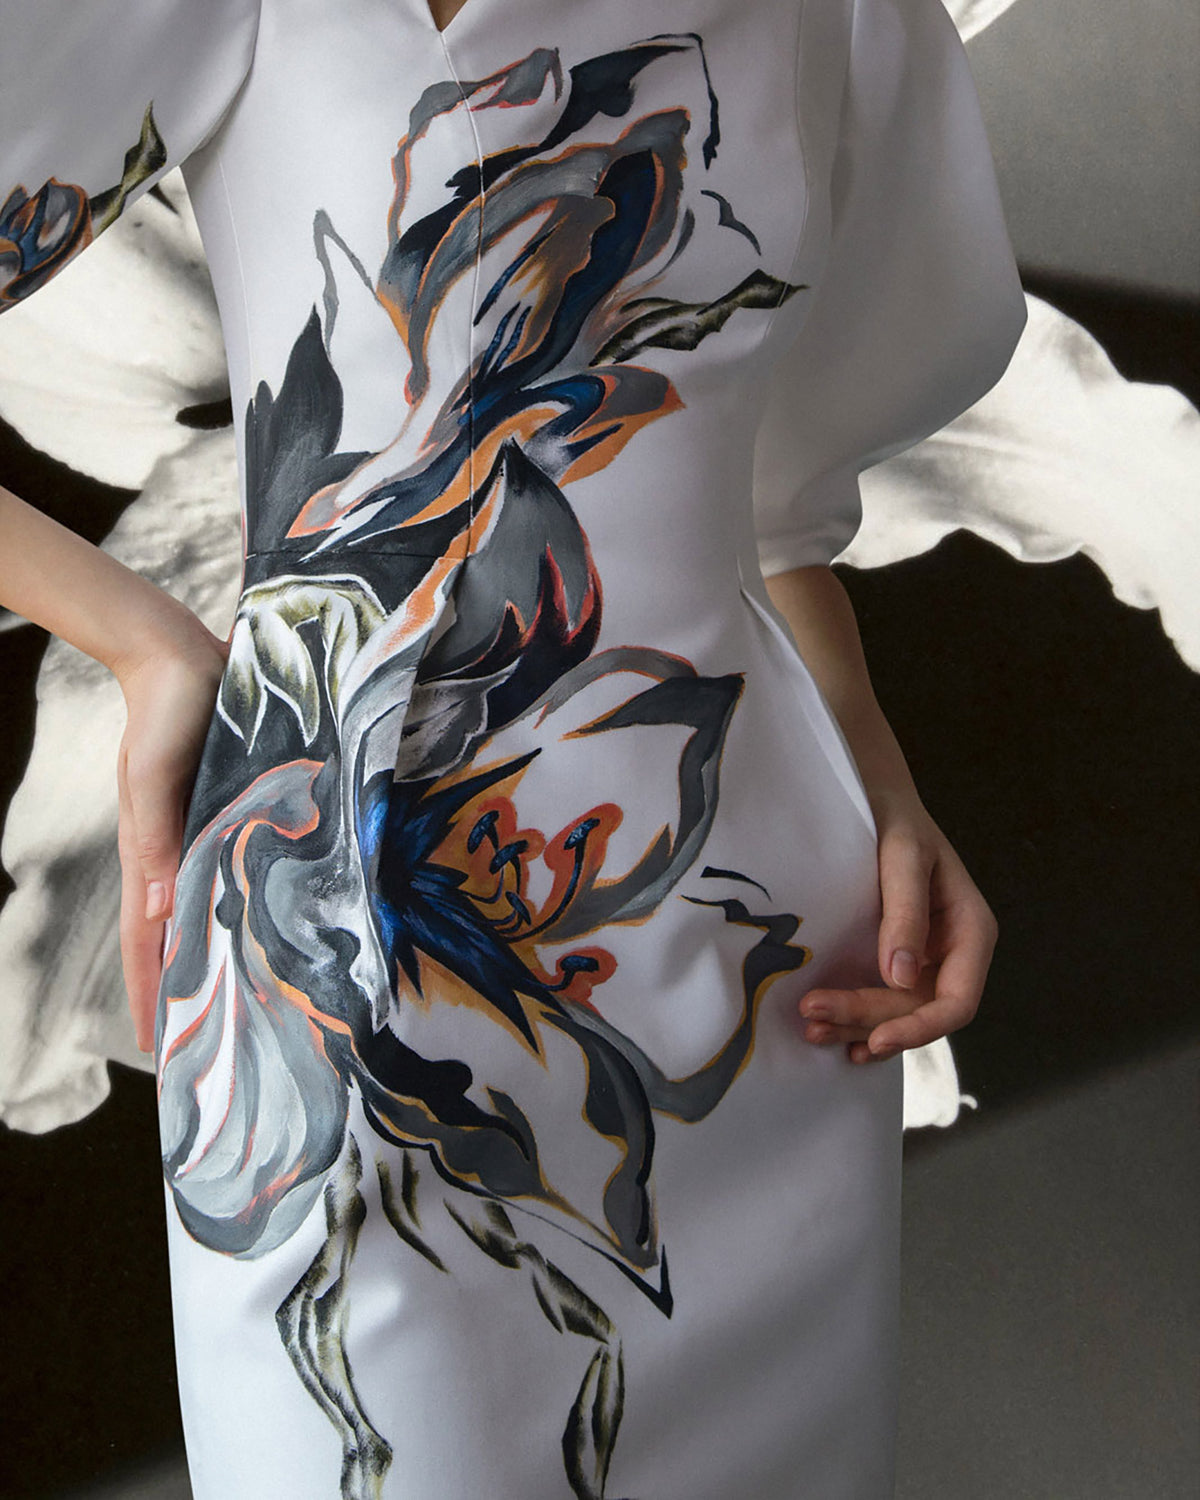 Robe mi-longue à manches volumineuses peintes à fleurs Amaryllis